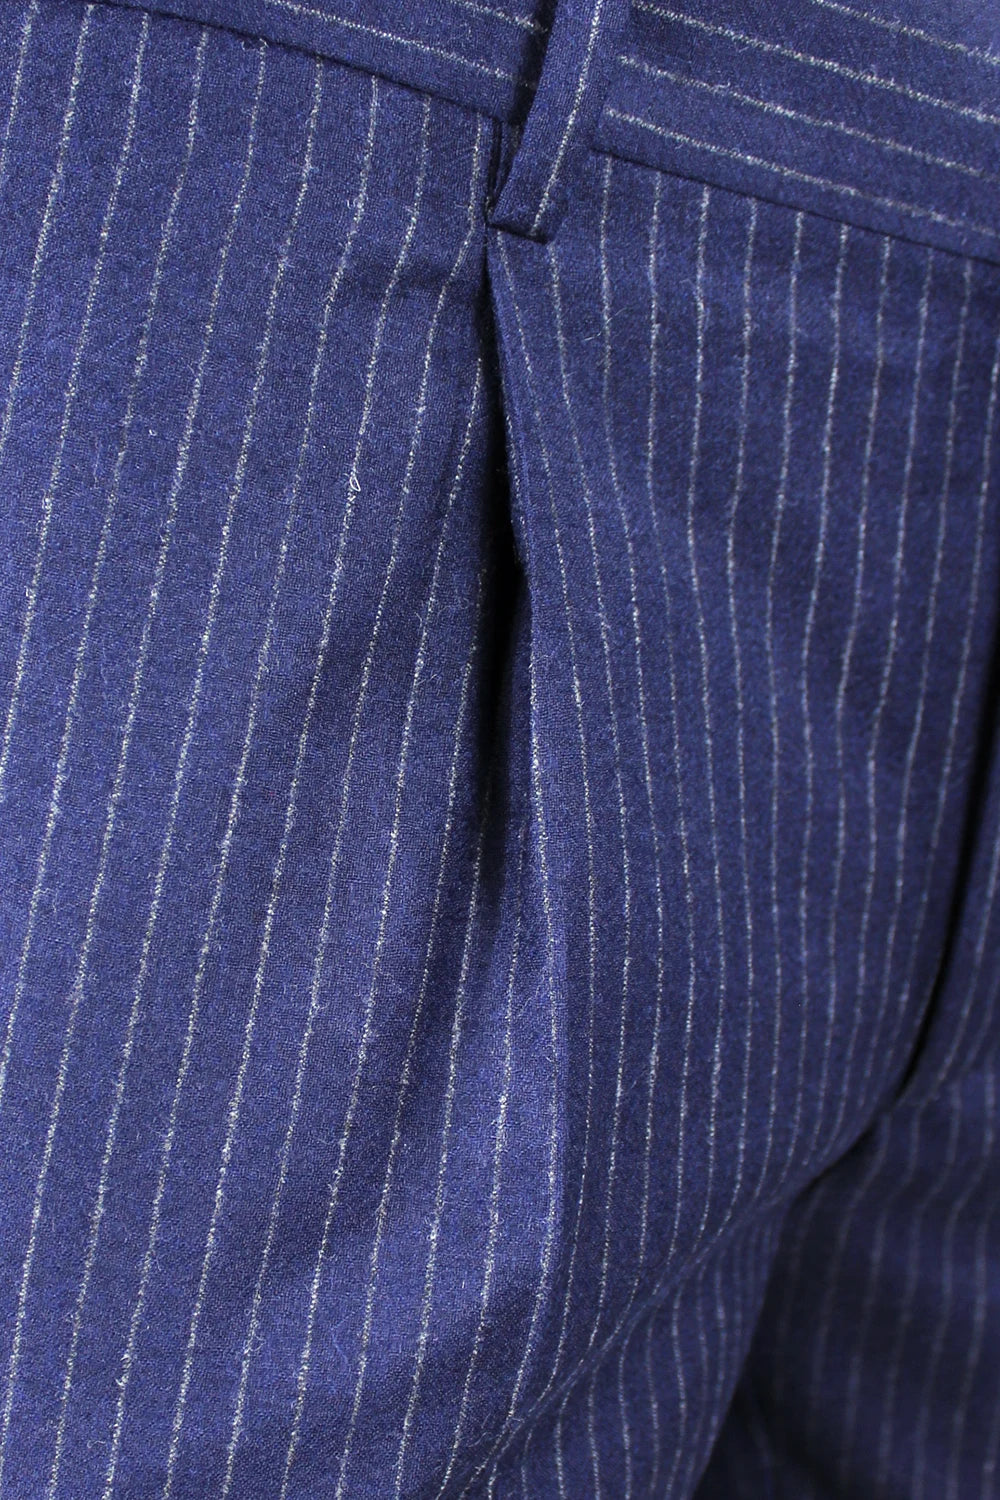 Pantalone con pince in lana blu gessata pince